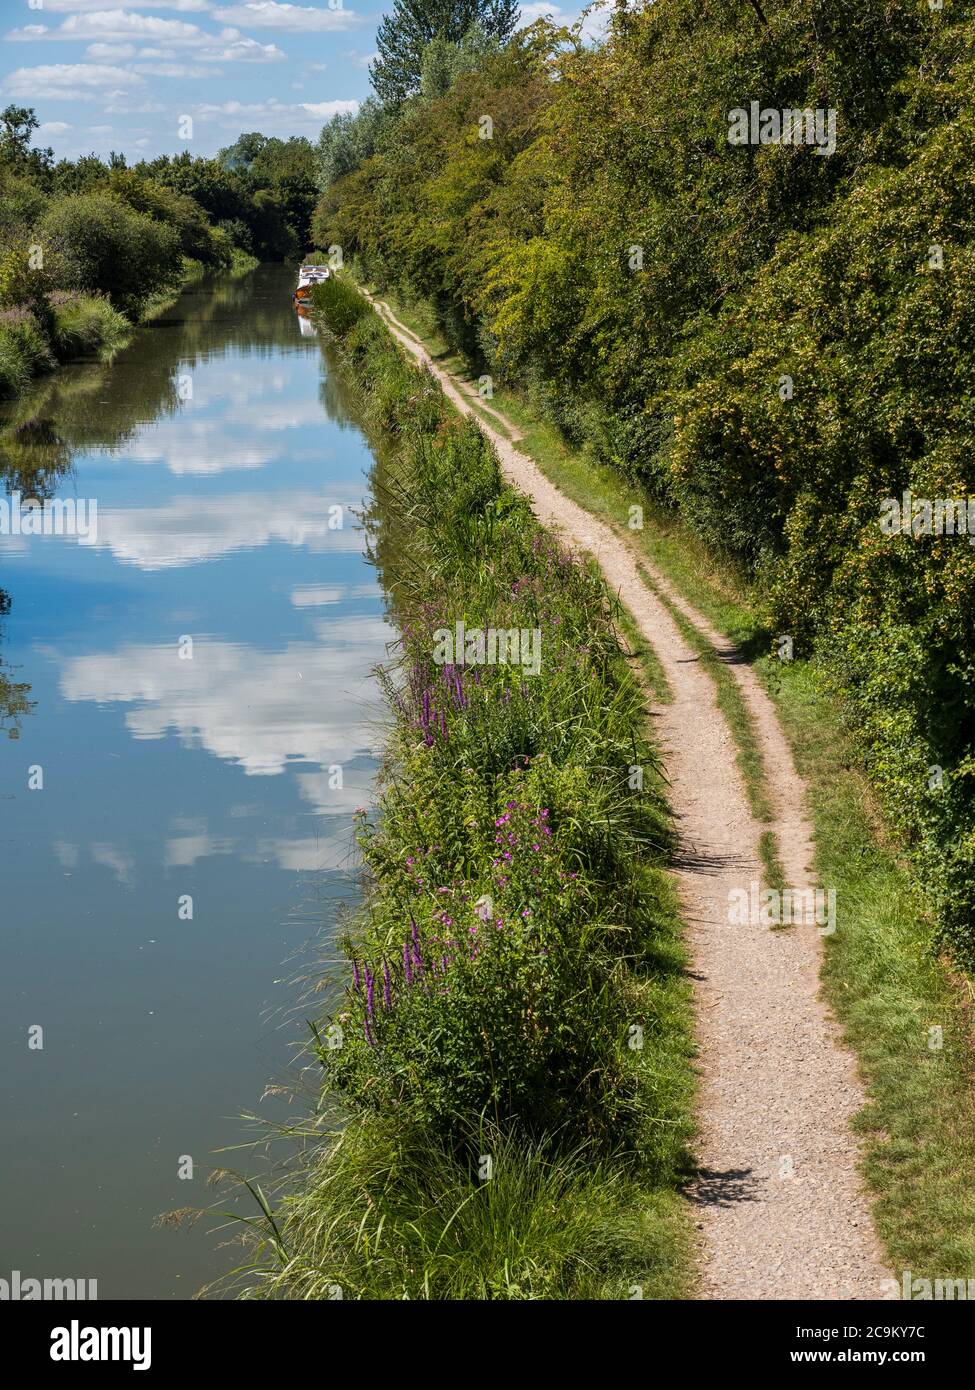 Photographie de paysage de Kennett et Avon Canal, Kintbury, Hungerford, Berkshire, Angleterre, Royaume-Uni, GB. Banque D'Images